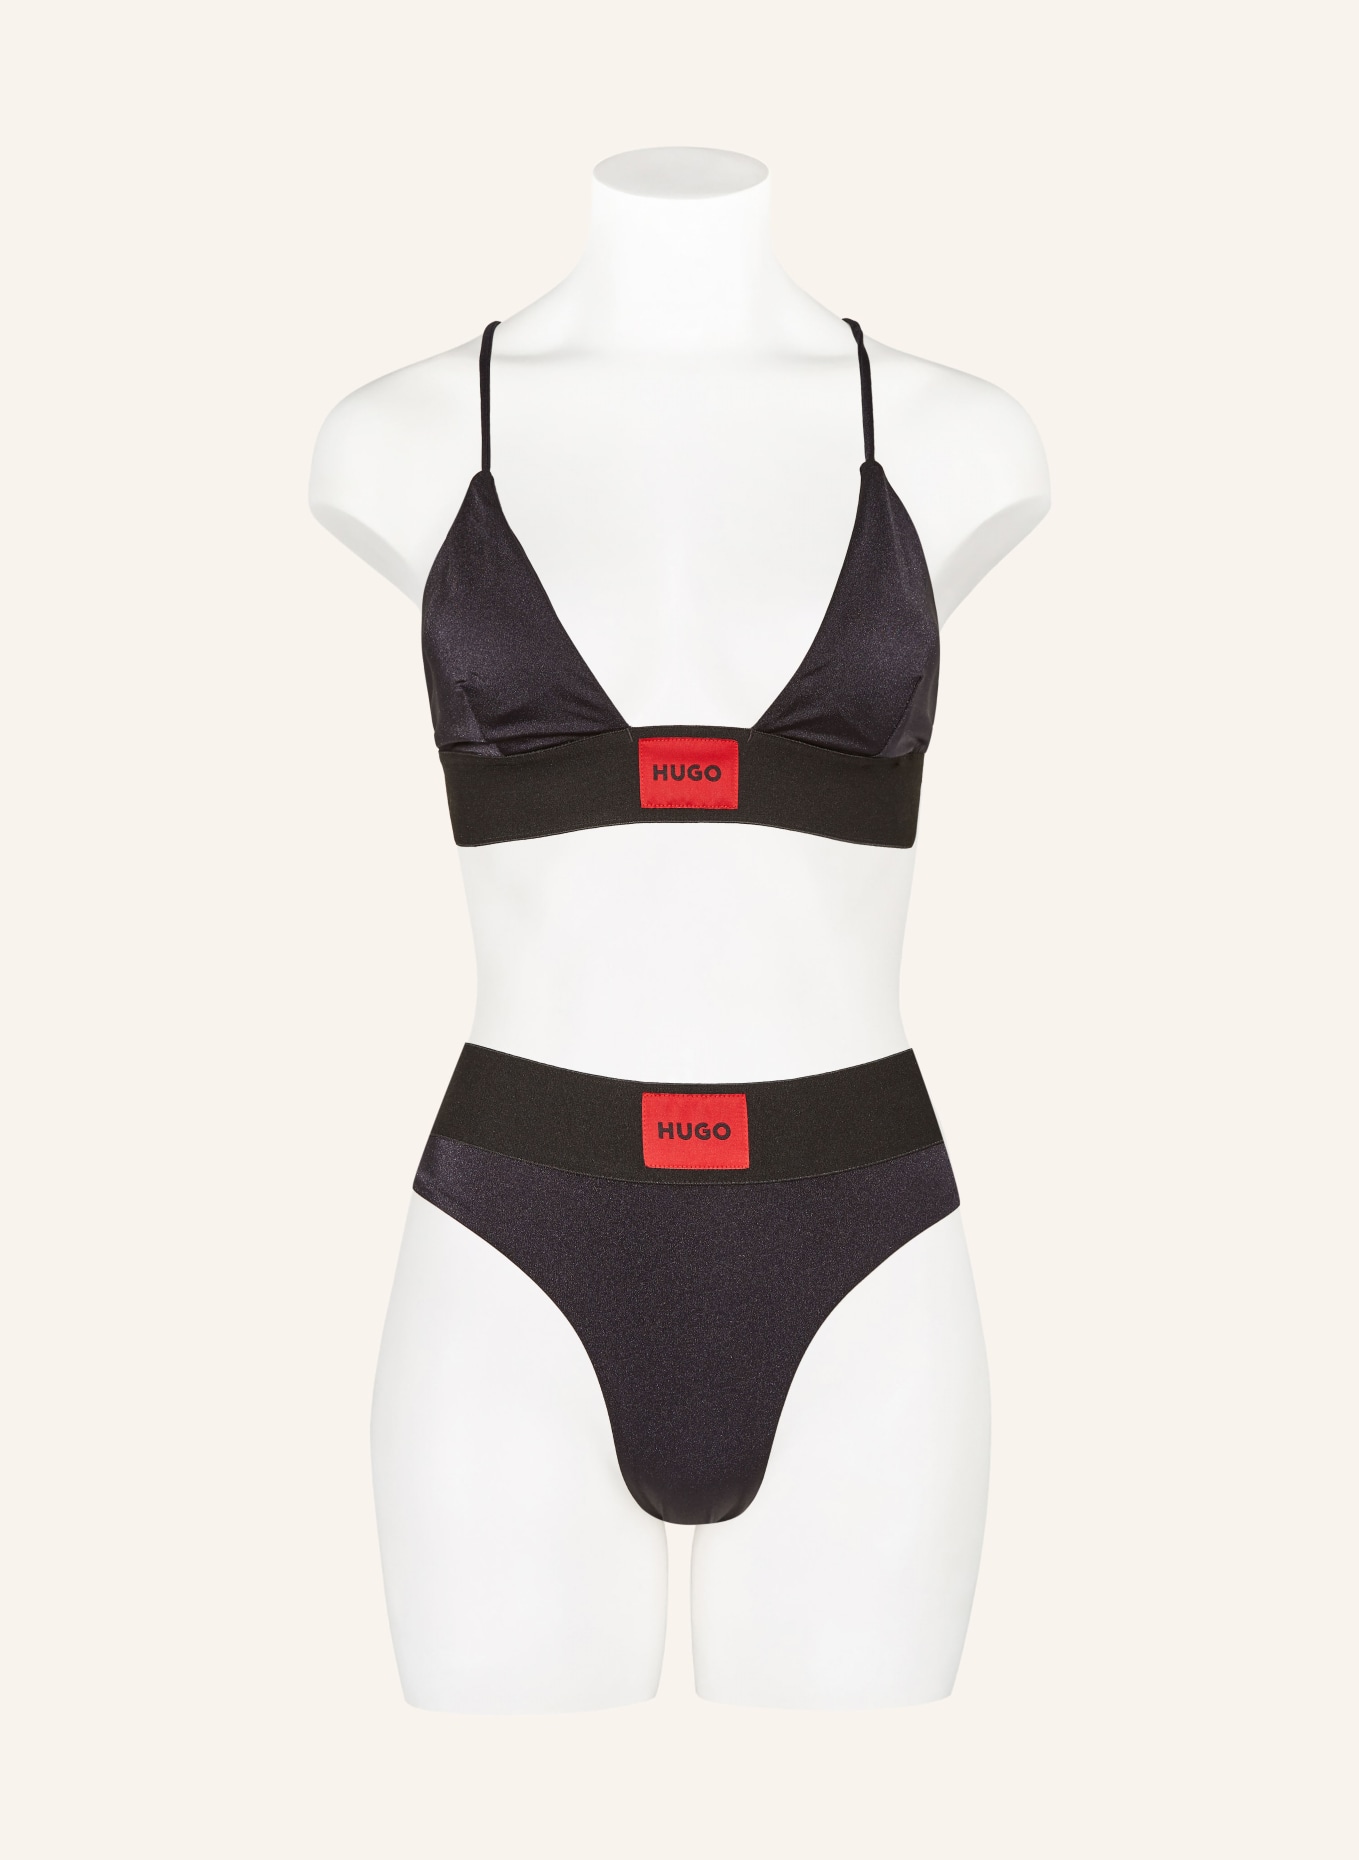 HUGO Bralette bikini top HANA, Color: BLACK (Image 2)